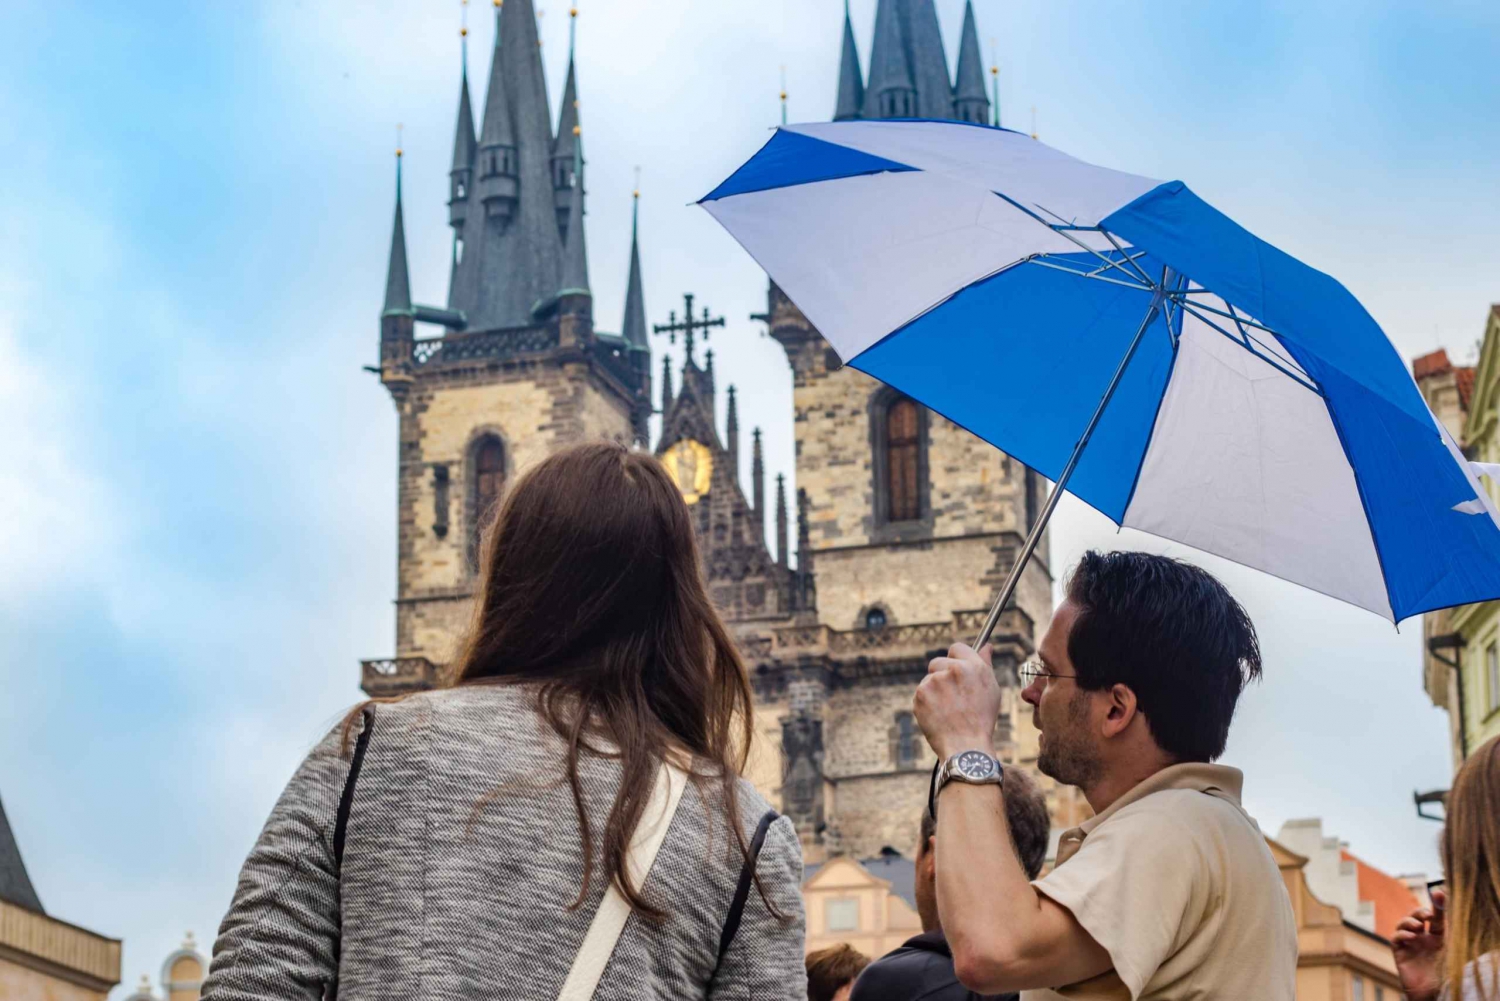 Prague: 3-Hour Walking Tour of Old Town & Prague Castle